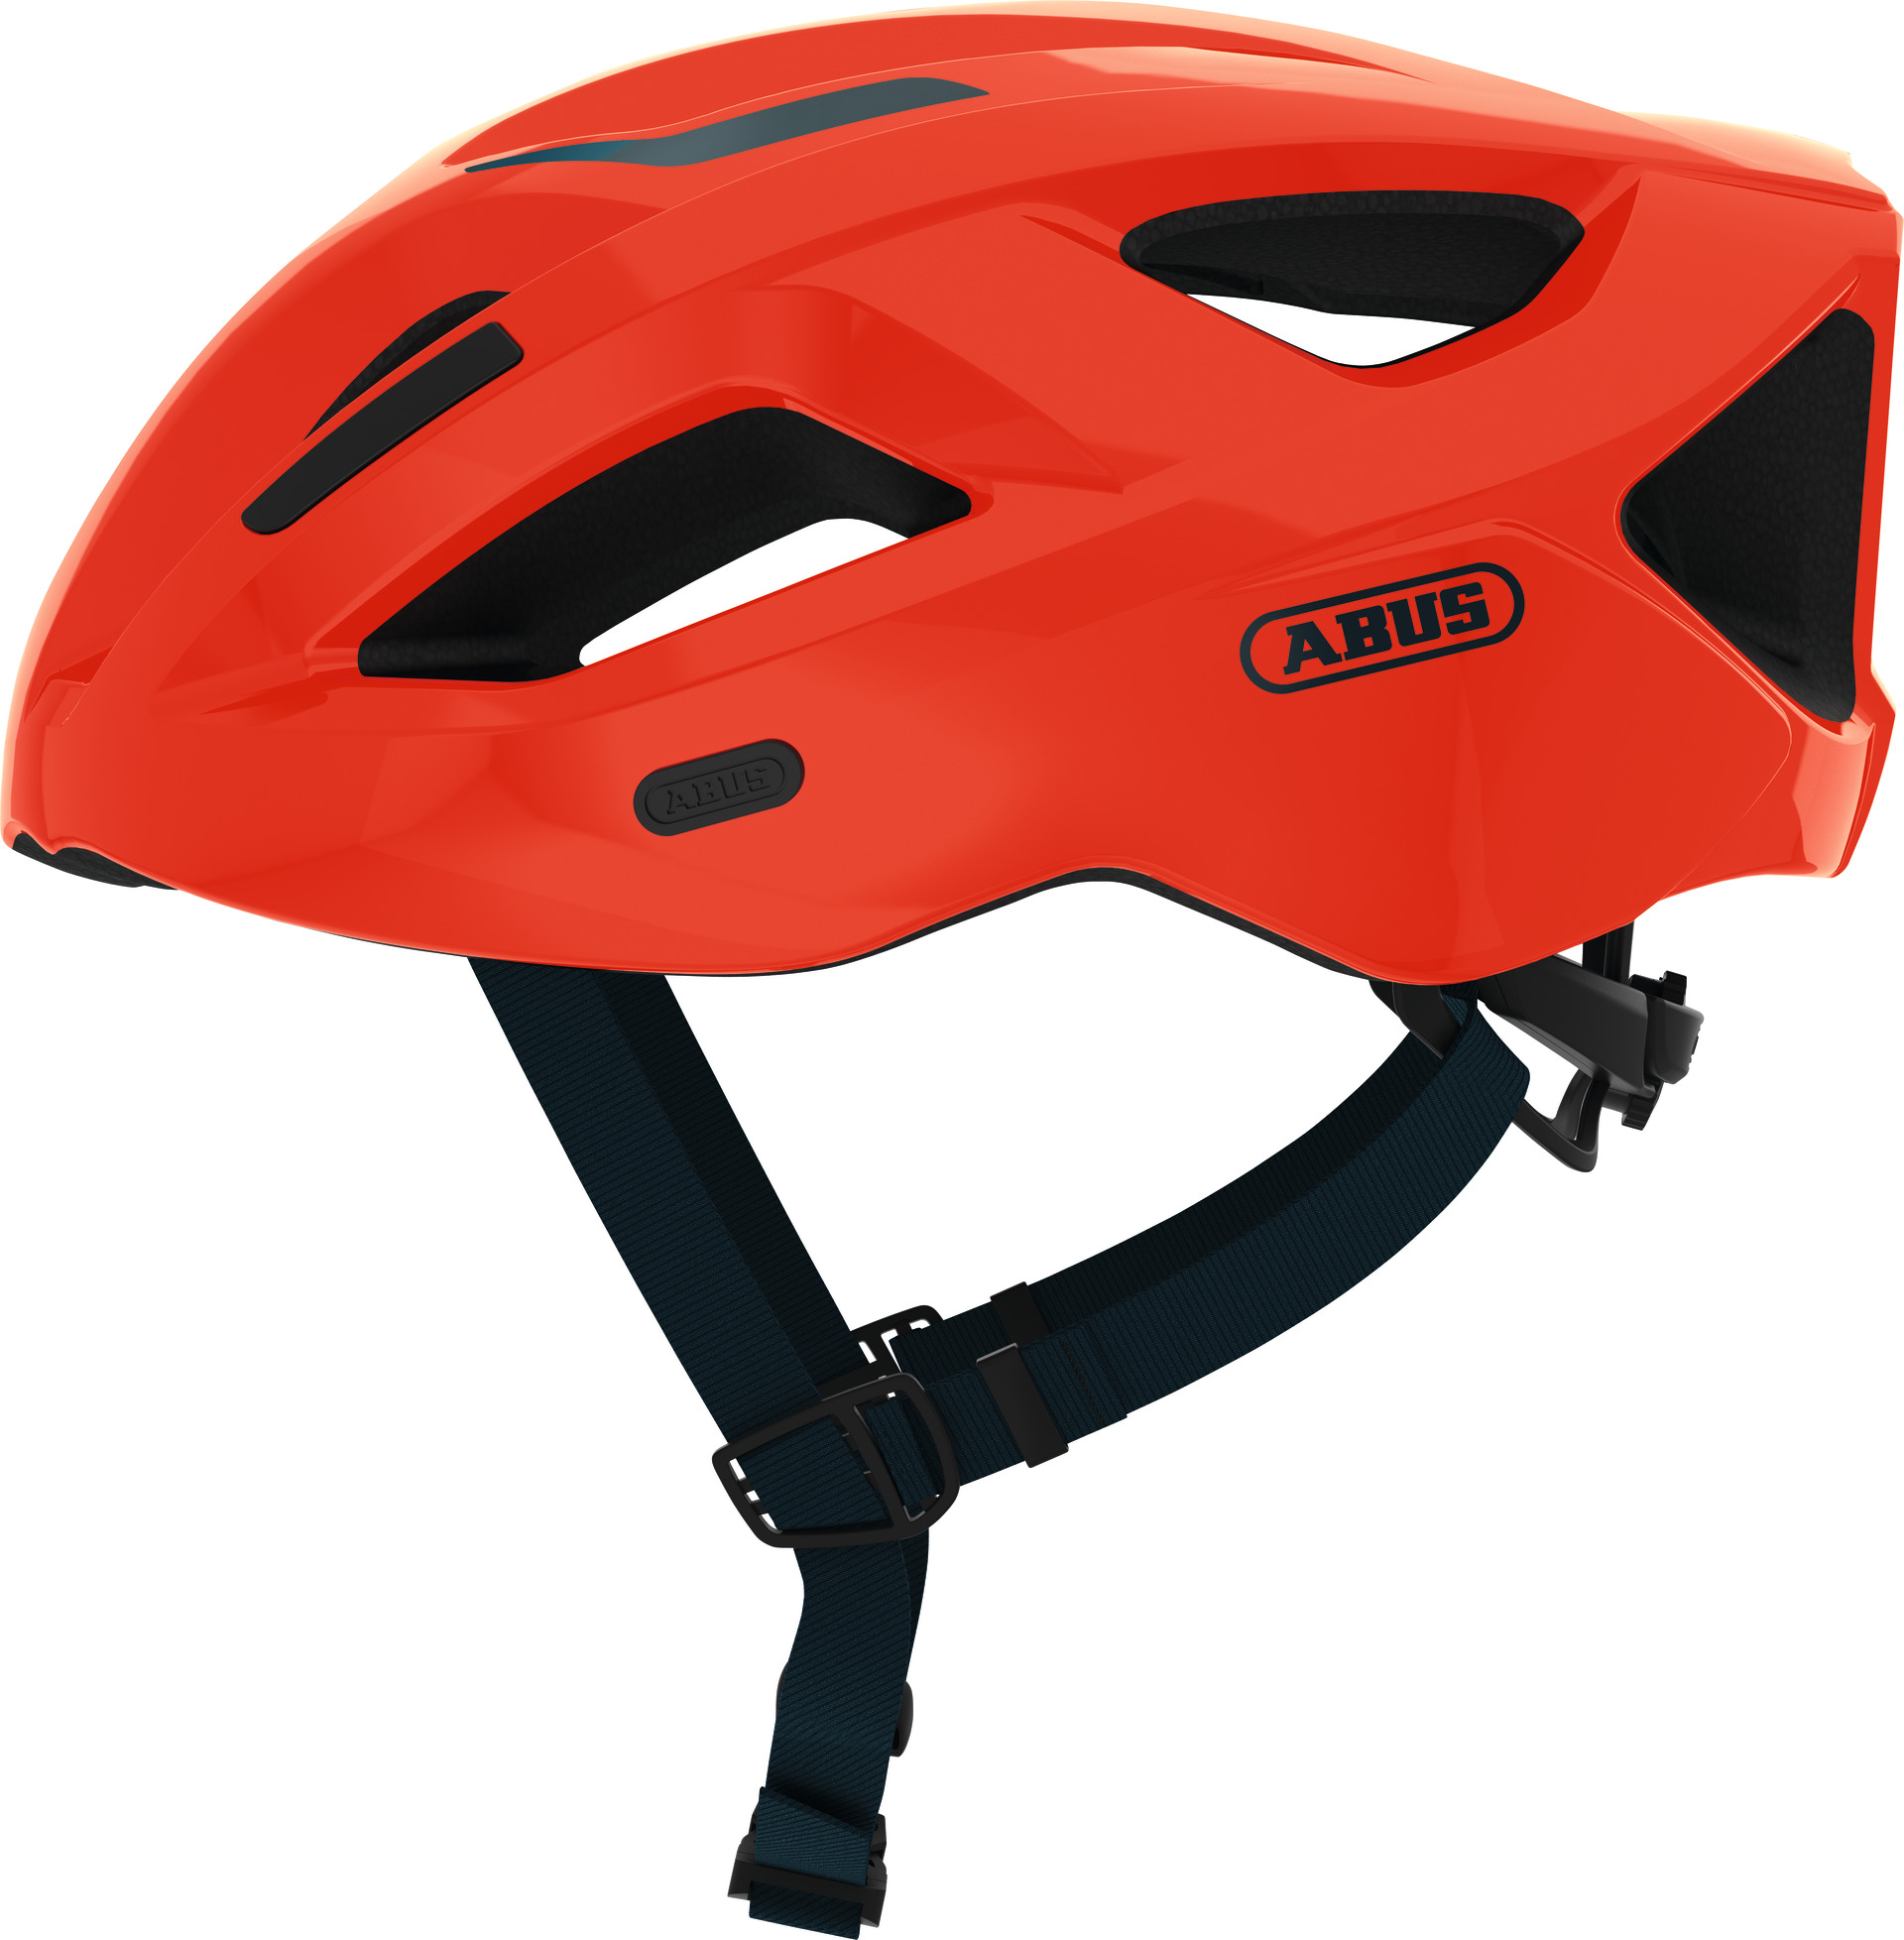 Шлем ABUS ADURO 2.1, размер M (52-58 см), Shrimp Orange, оранжево-черный